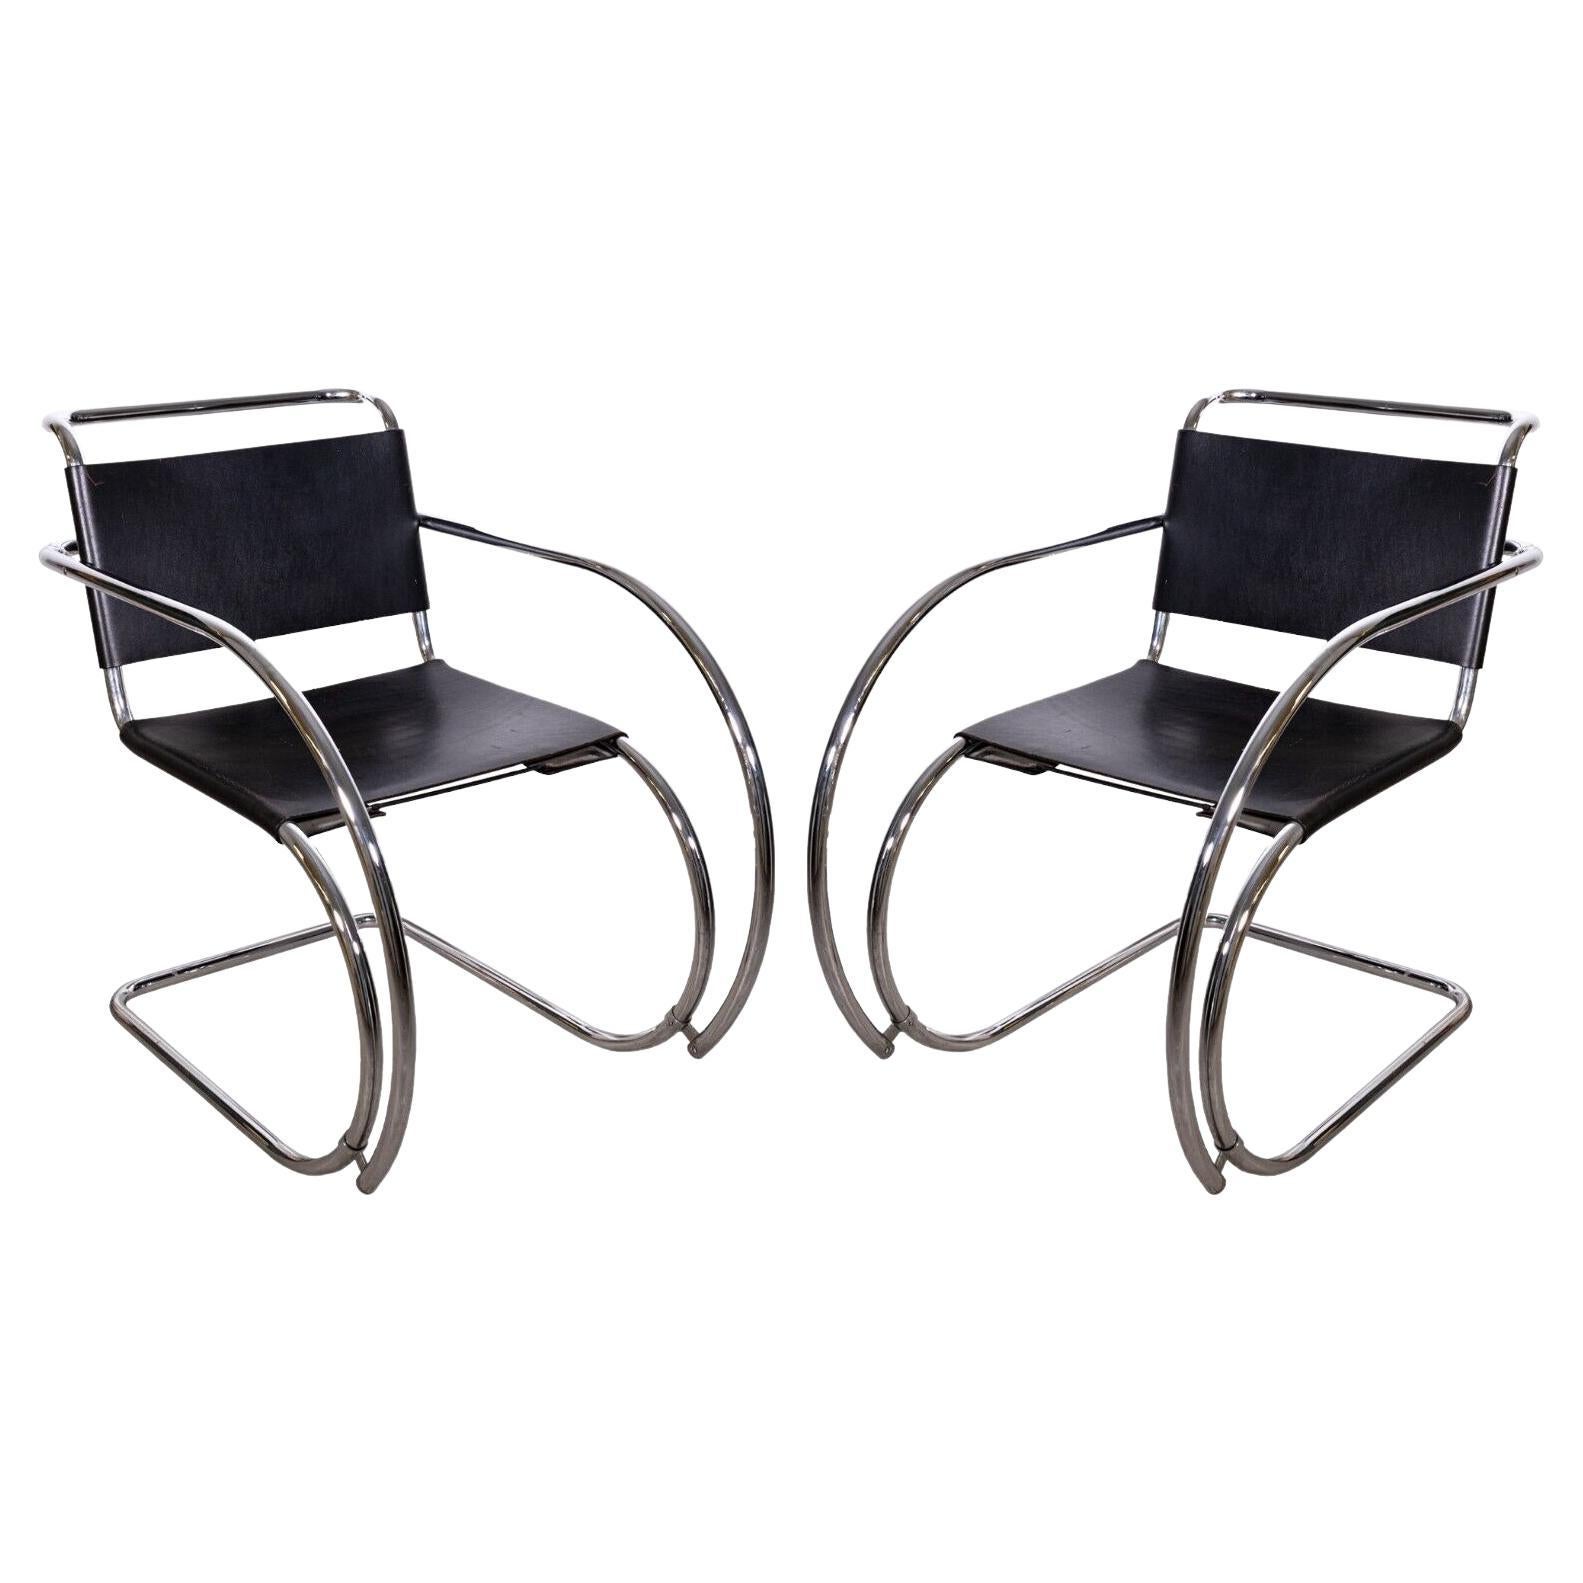 MiesVan Der Rohe paire de chaises longues Mr en chrome et cuir mi-siècle moderne